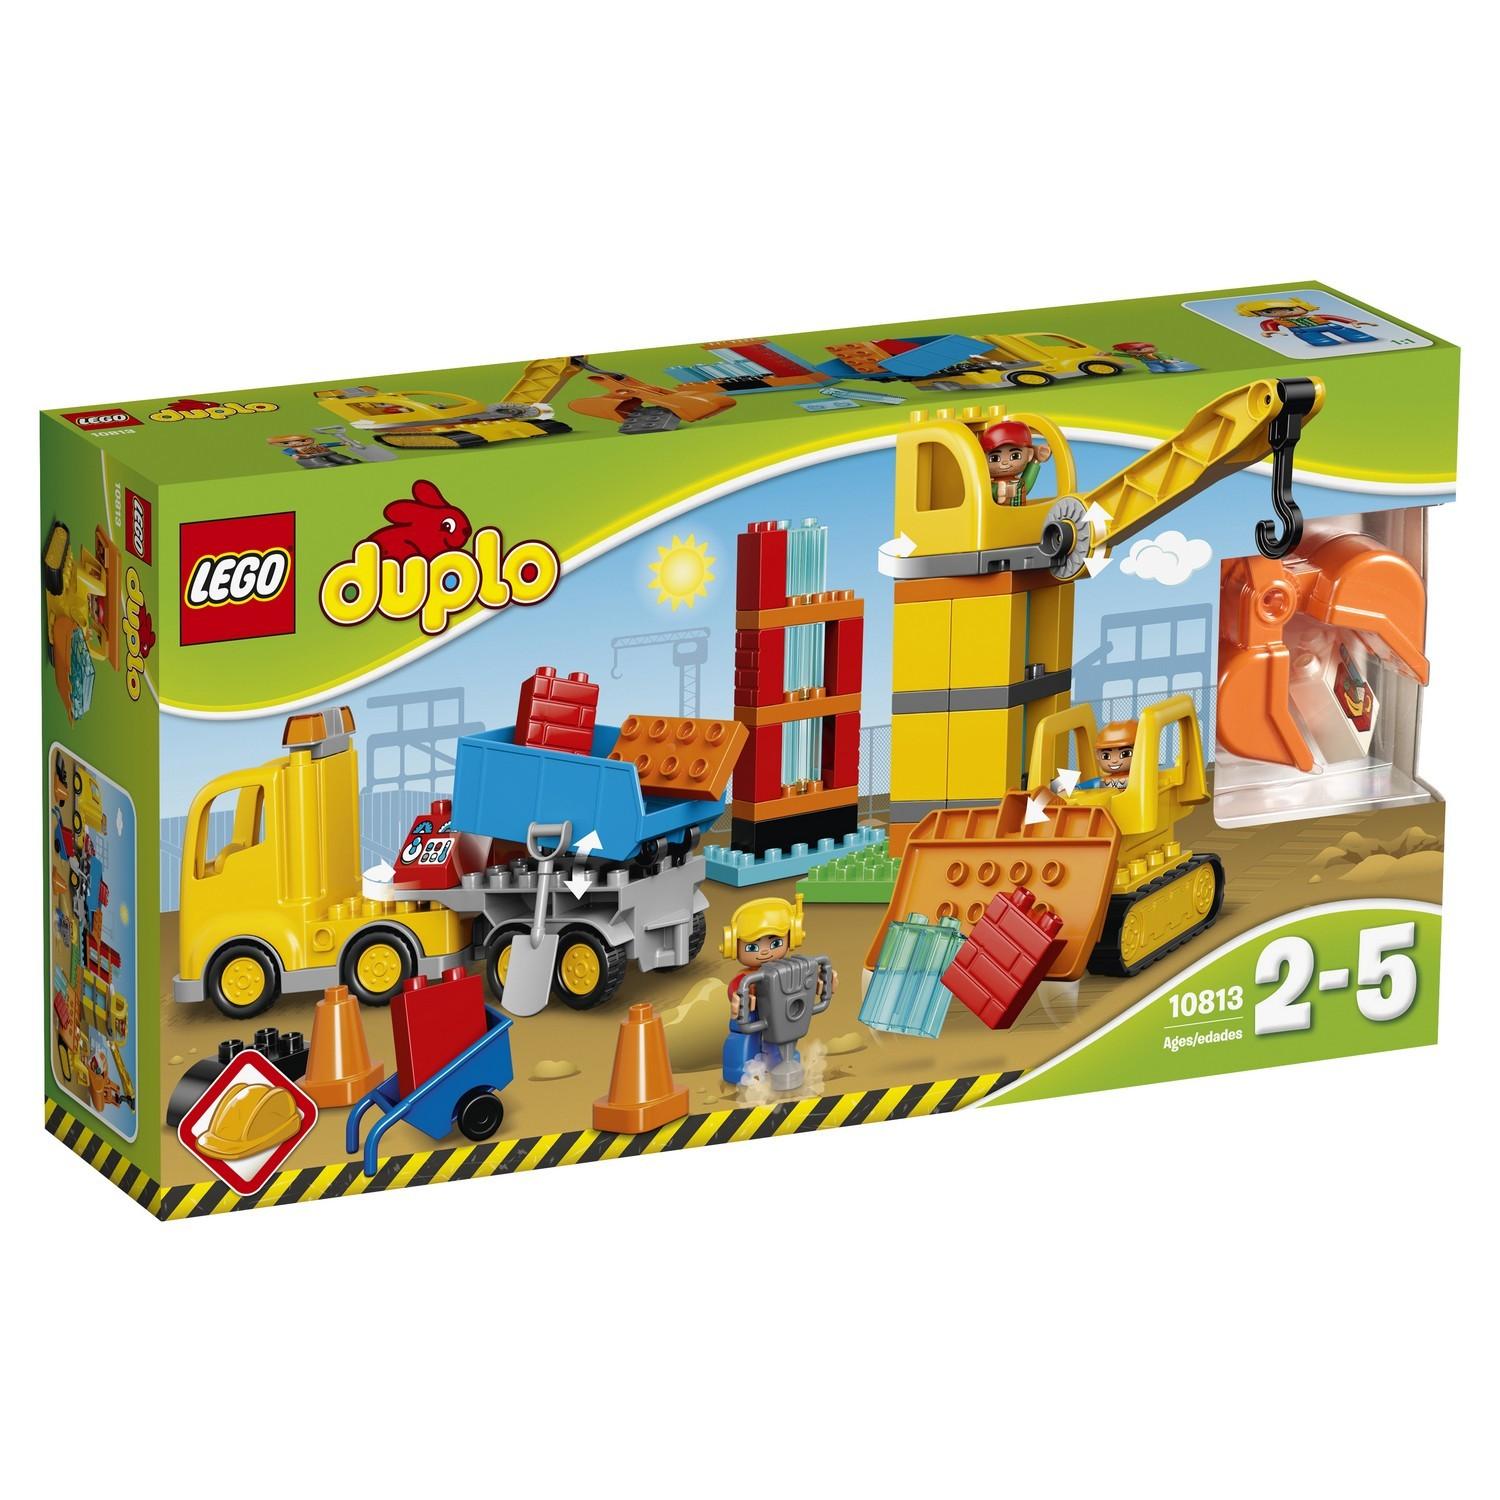 Lego Duplo 10813 Большая стройплощадка